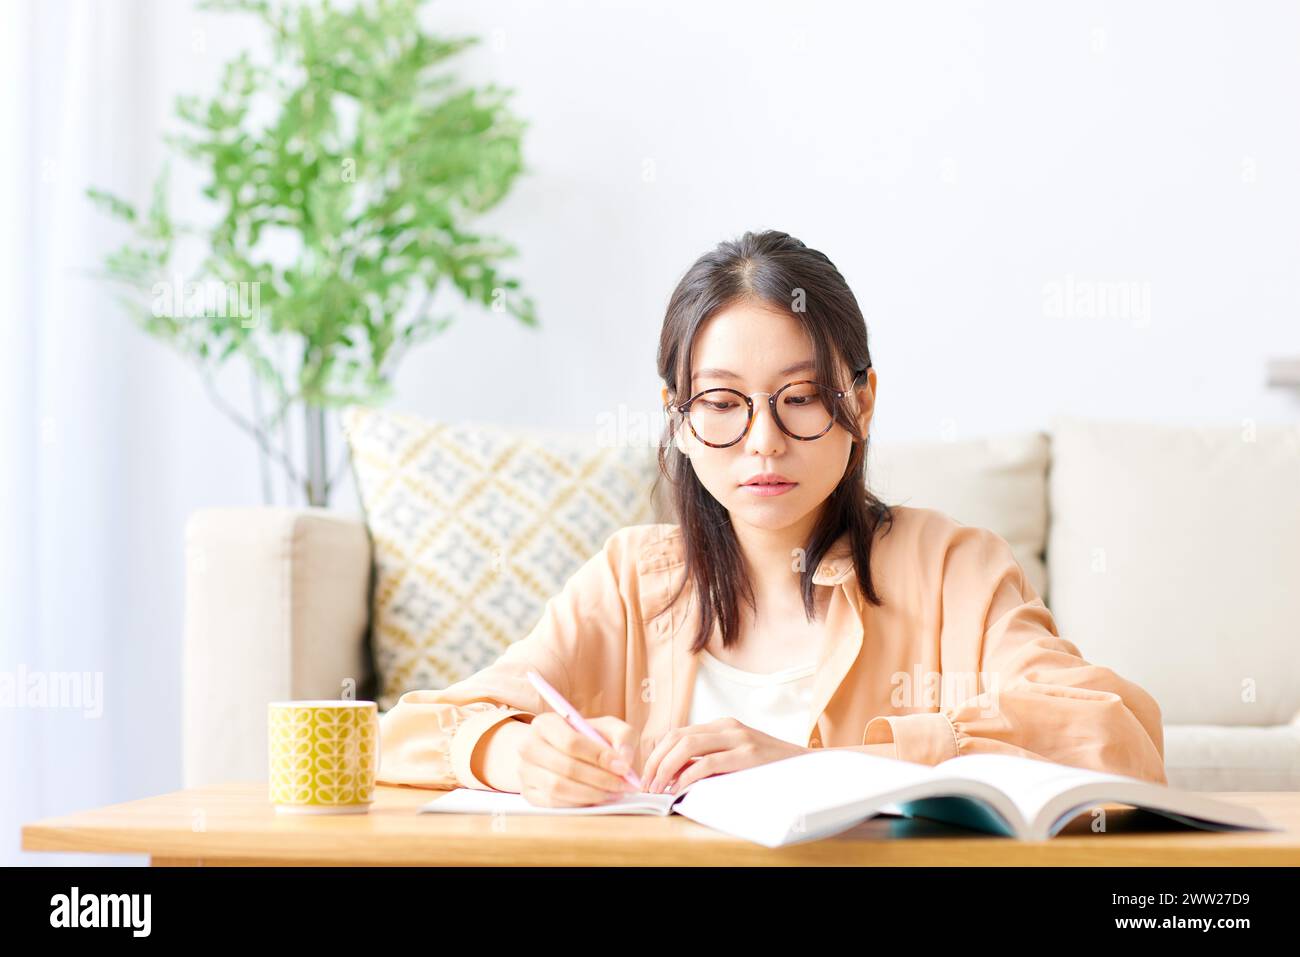 Une femme en lunettes assise à une table avec un livre et un stylo Banque D'Images